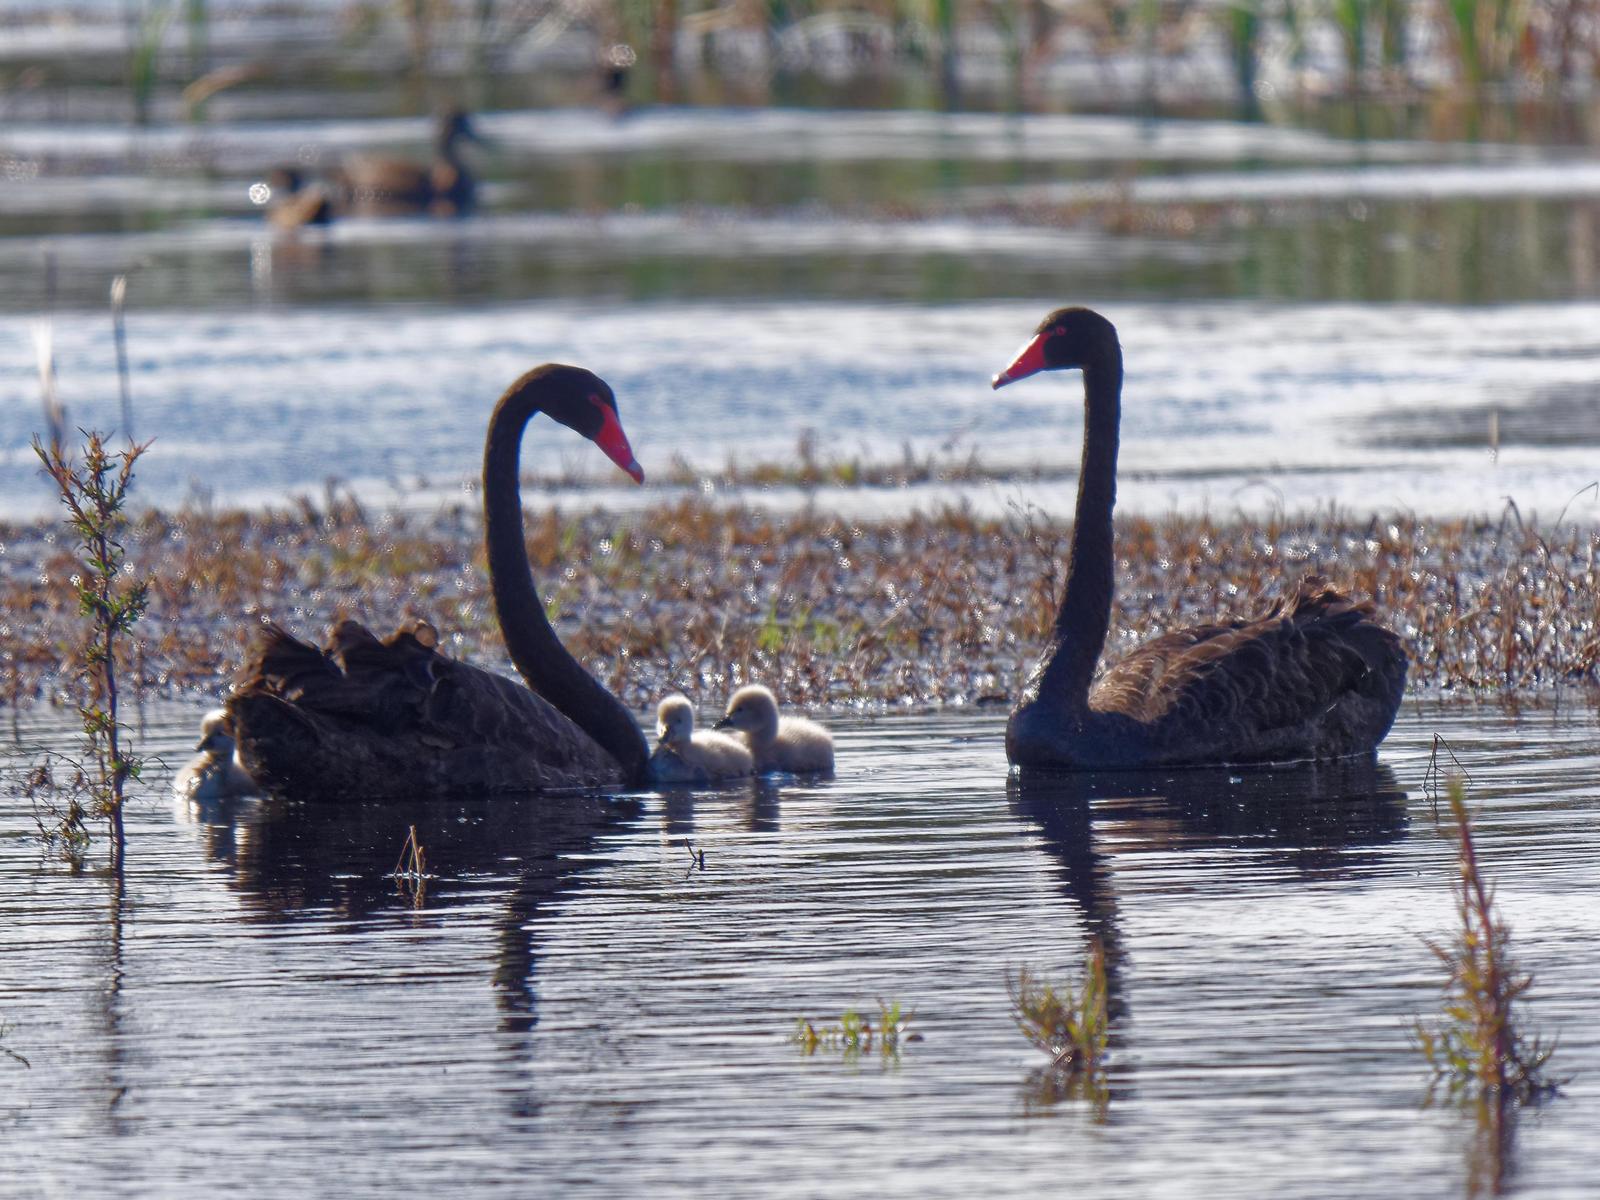 Black Swan Photo by Peter Lowe